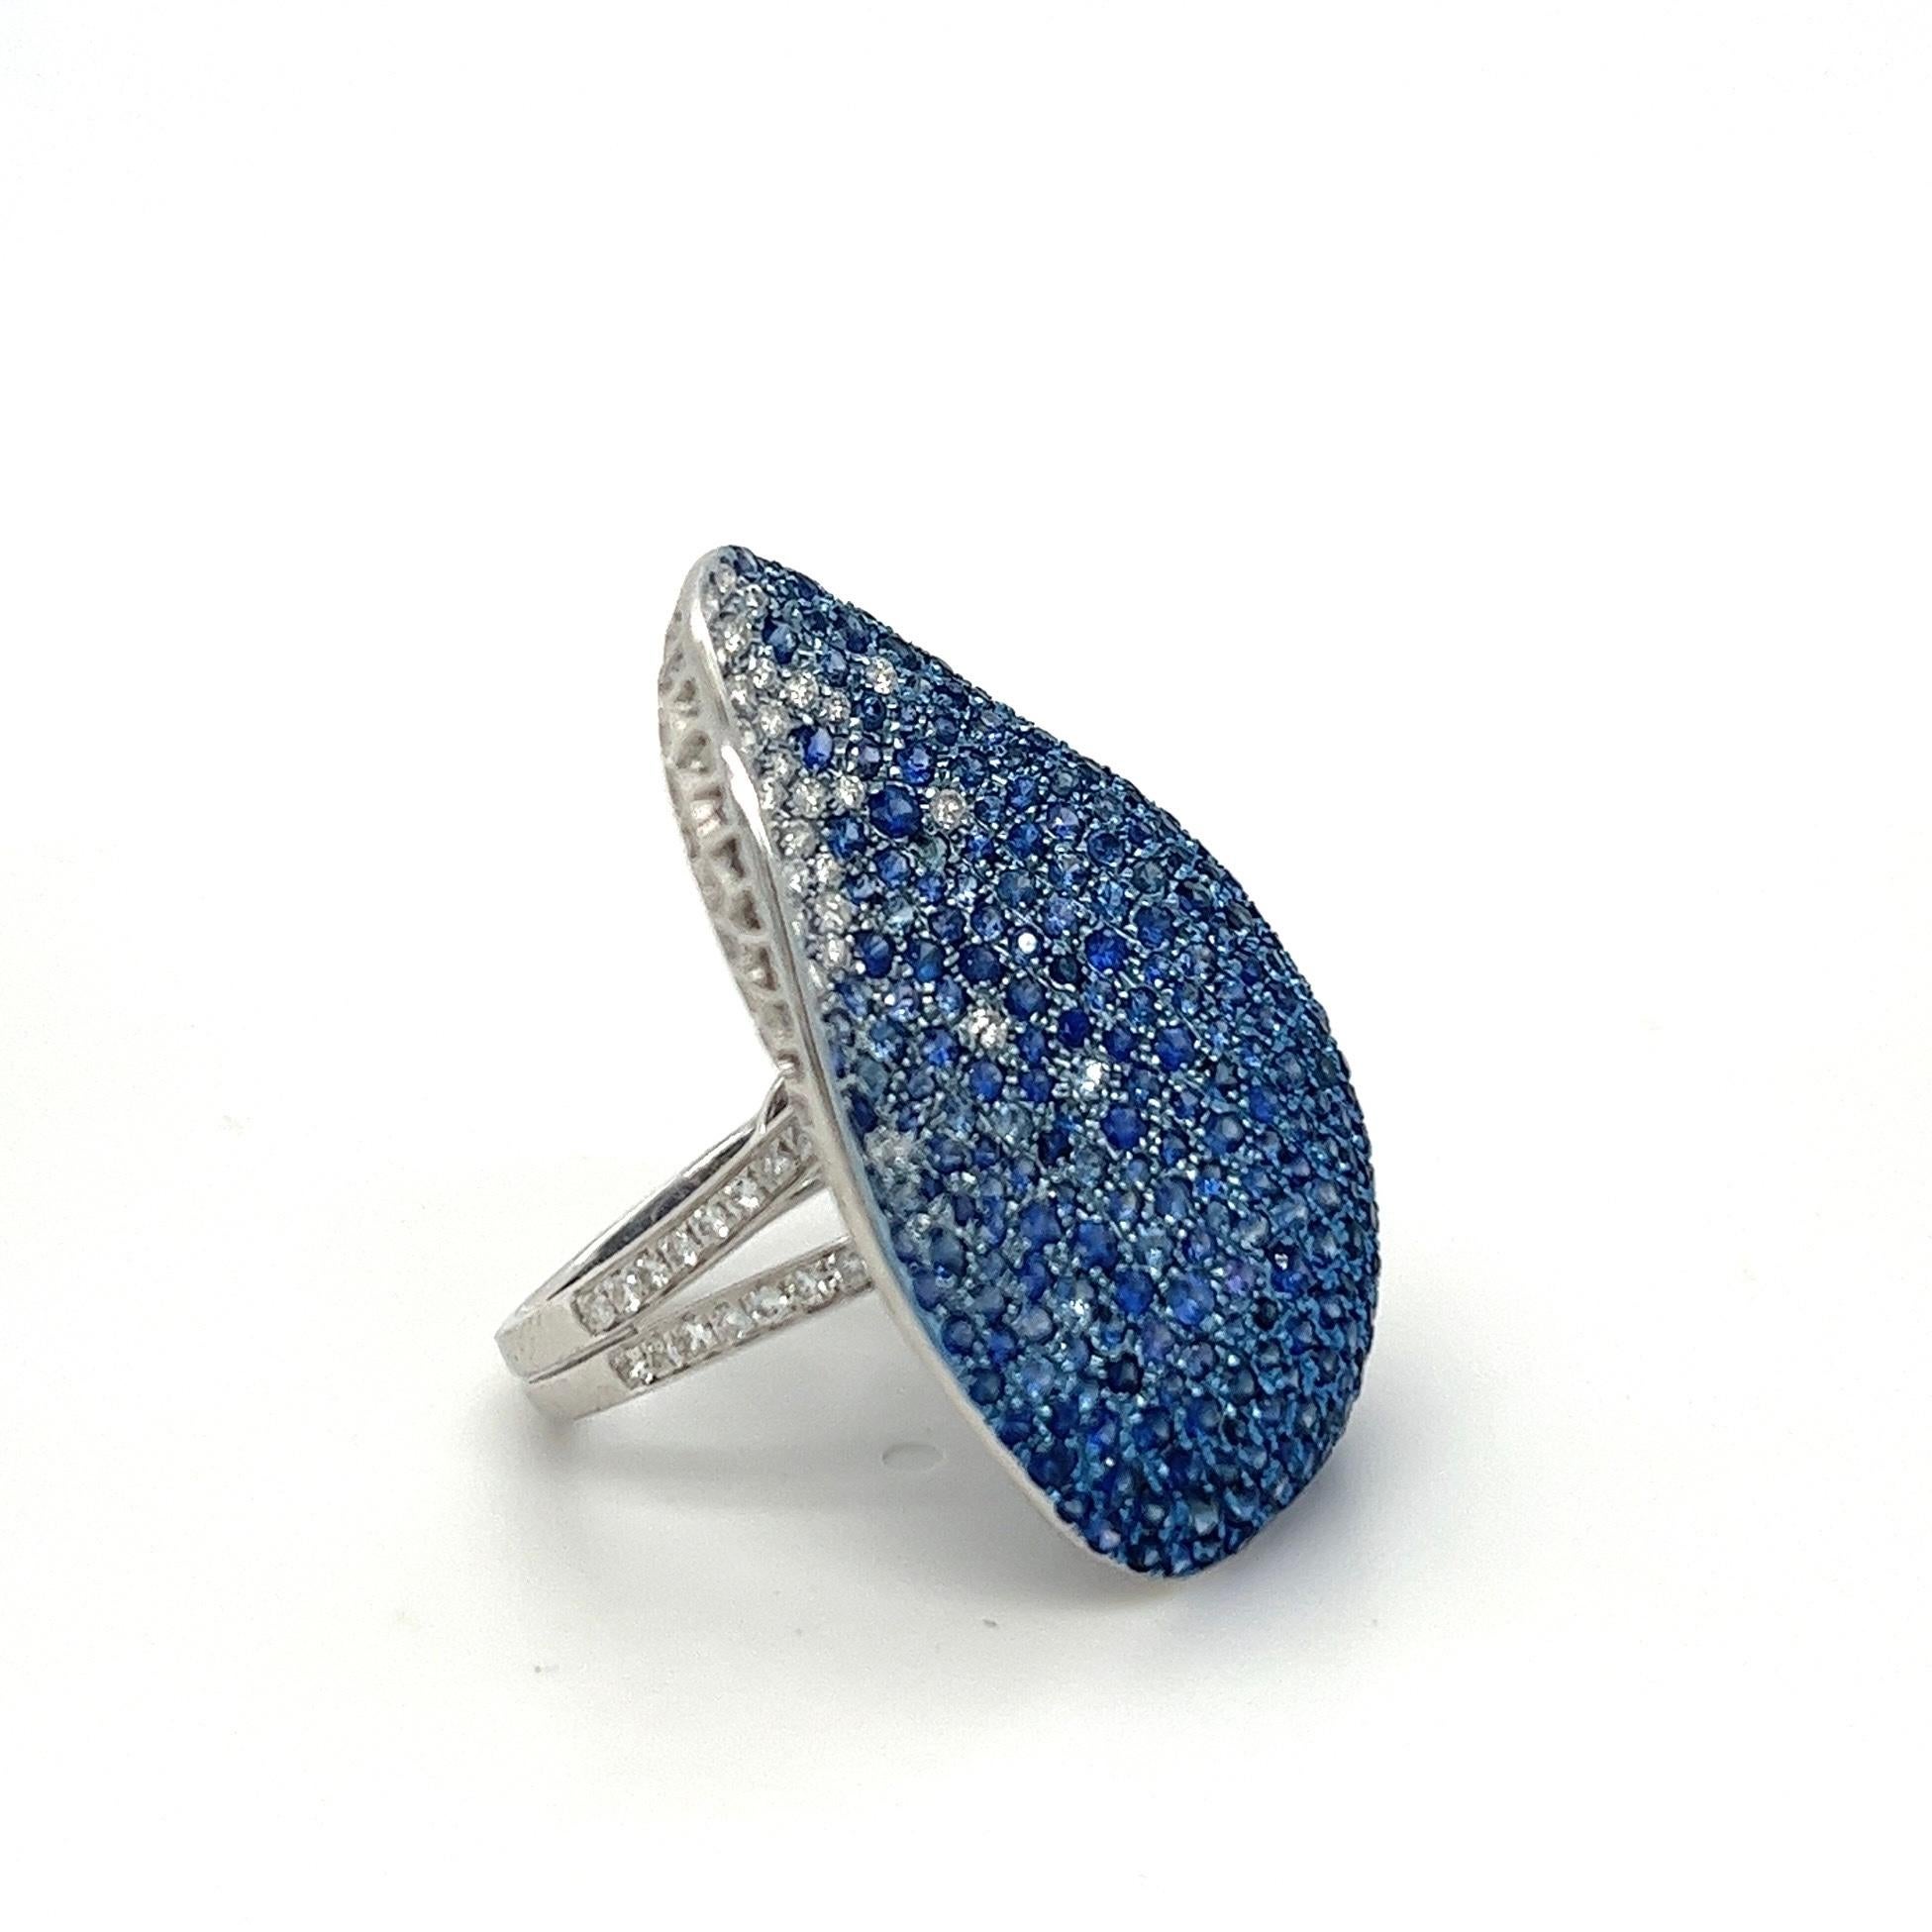 18 Karat Weißgold Ring mit Diamanten und blauen Saphiren

340 Blaue Saphire - 4,08 CT
105 Diamanten - 0,92 CT
18K Weiß - 8.86 CT

Der Ring von Althoff Jewelry ist eine faszinierende Mischung aus blauem Saphir und Diamant, die die Essenz der im Wind